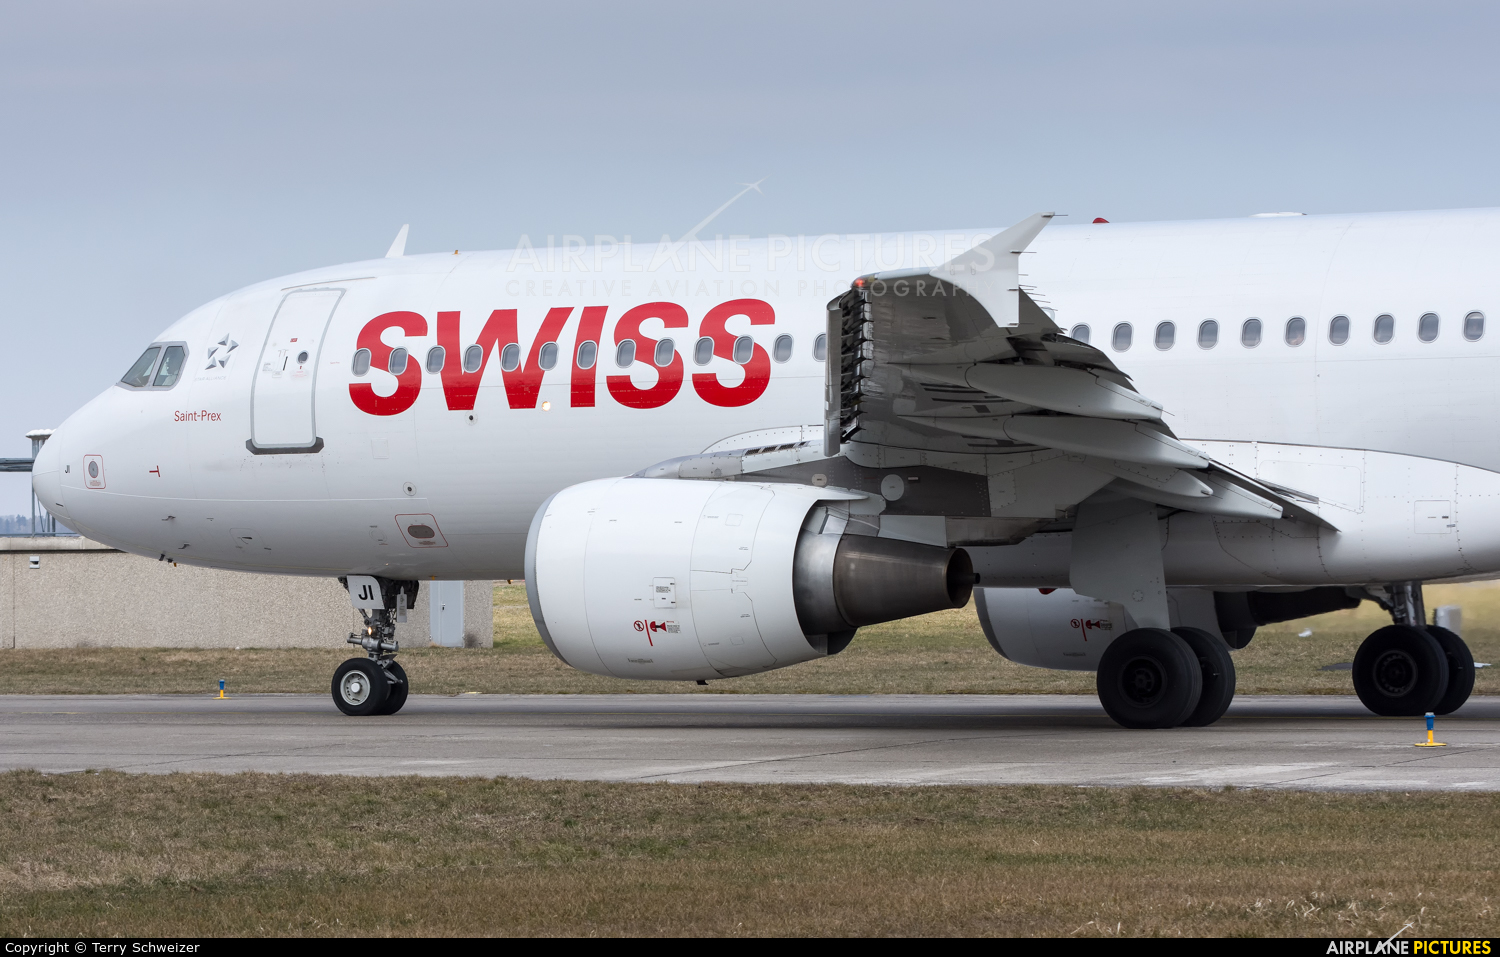 Swiss HB-IJI aircraft at Zurich